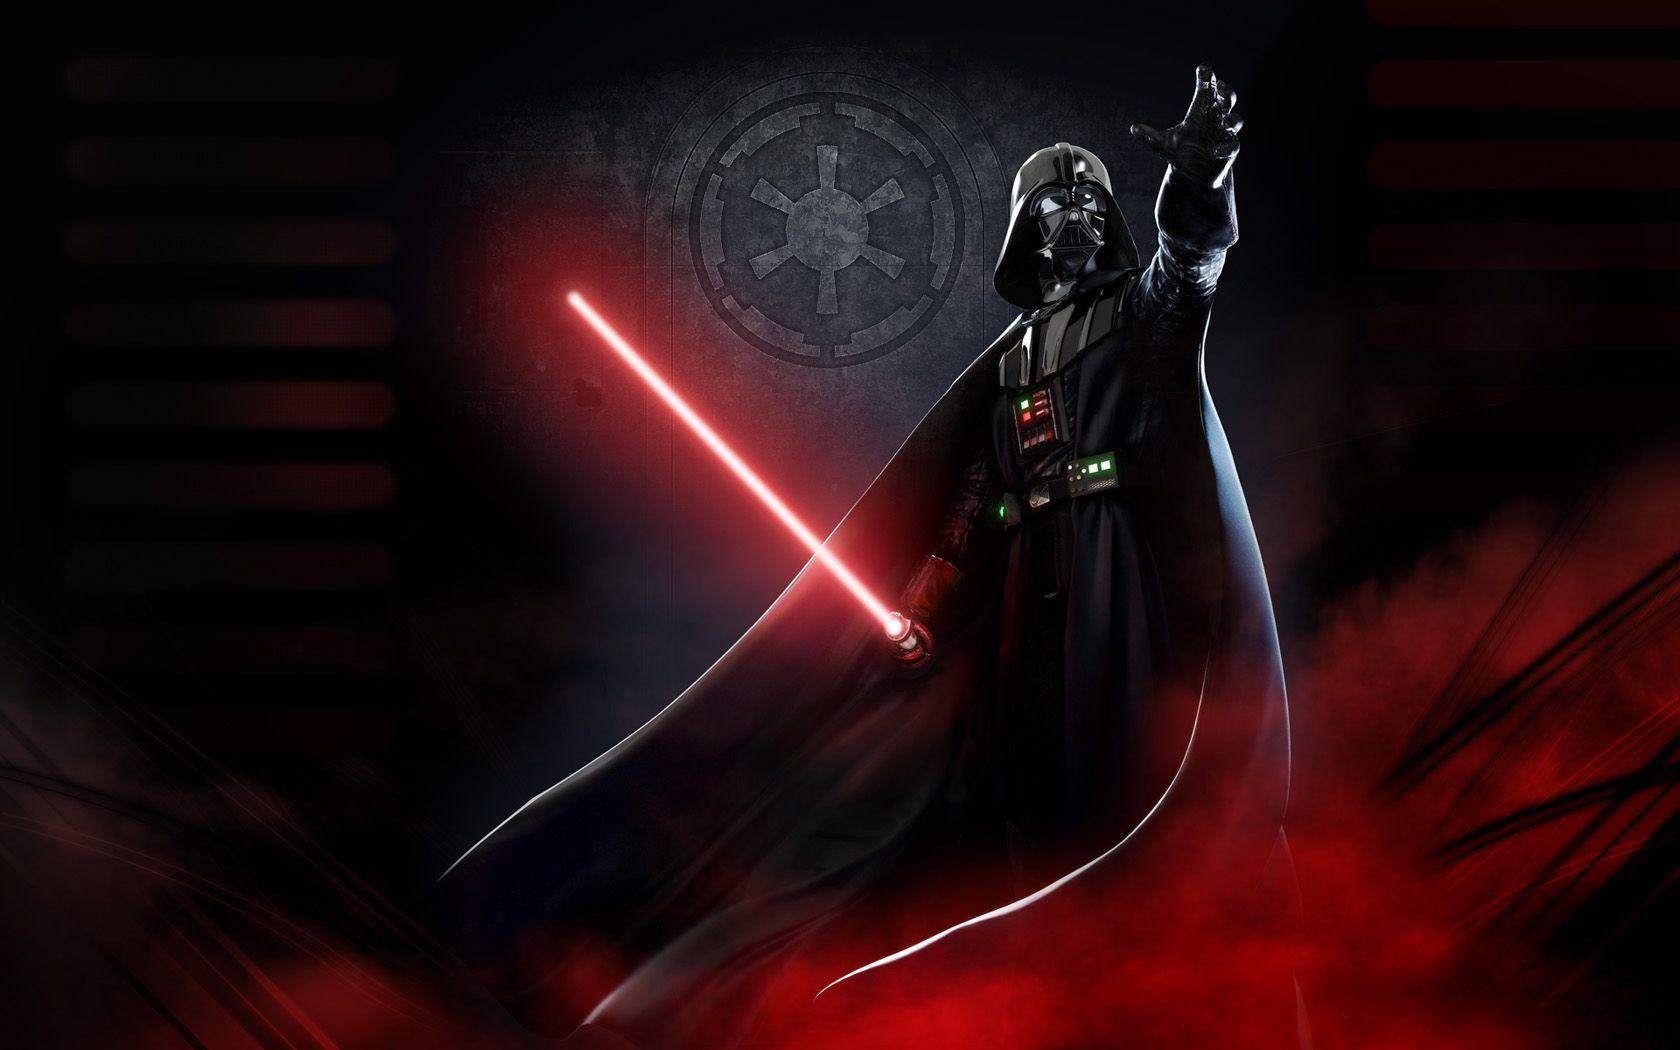 Light Star Wars lightsabers Darth Vader wallpapers